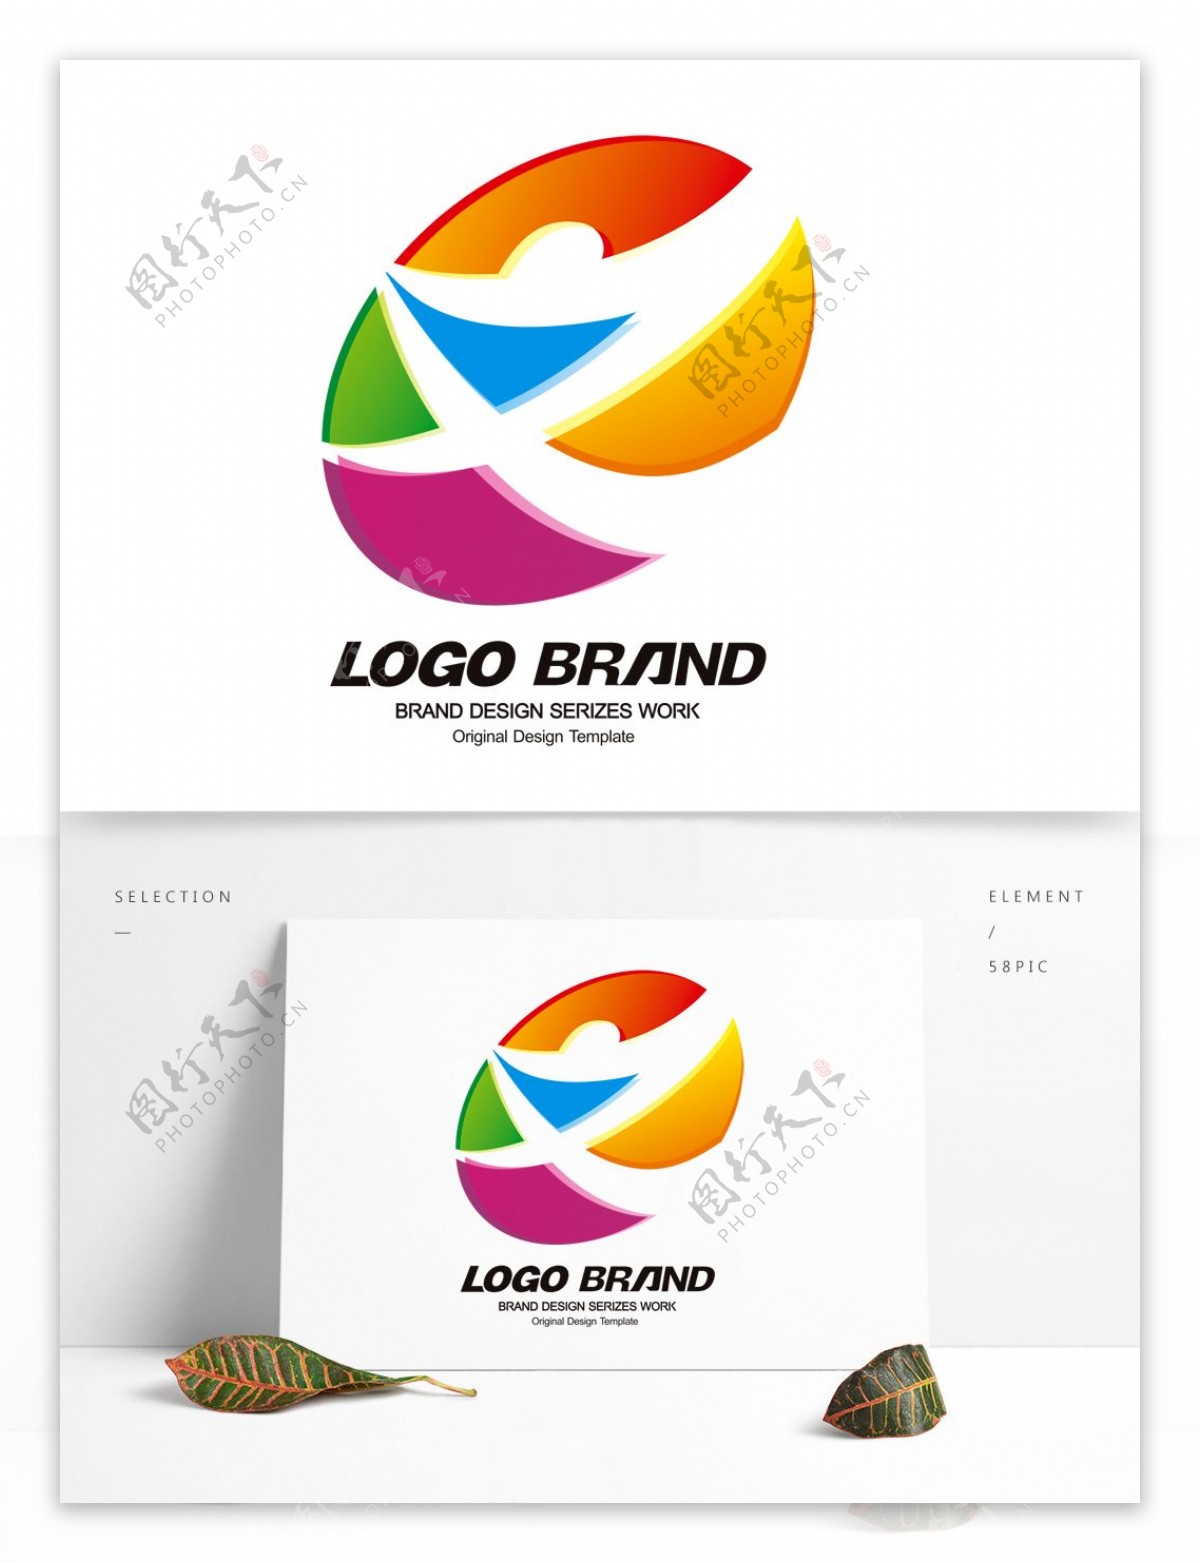 矢量创意多彩文化节公司标志LOGO设计